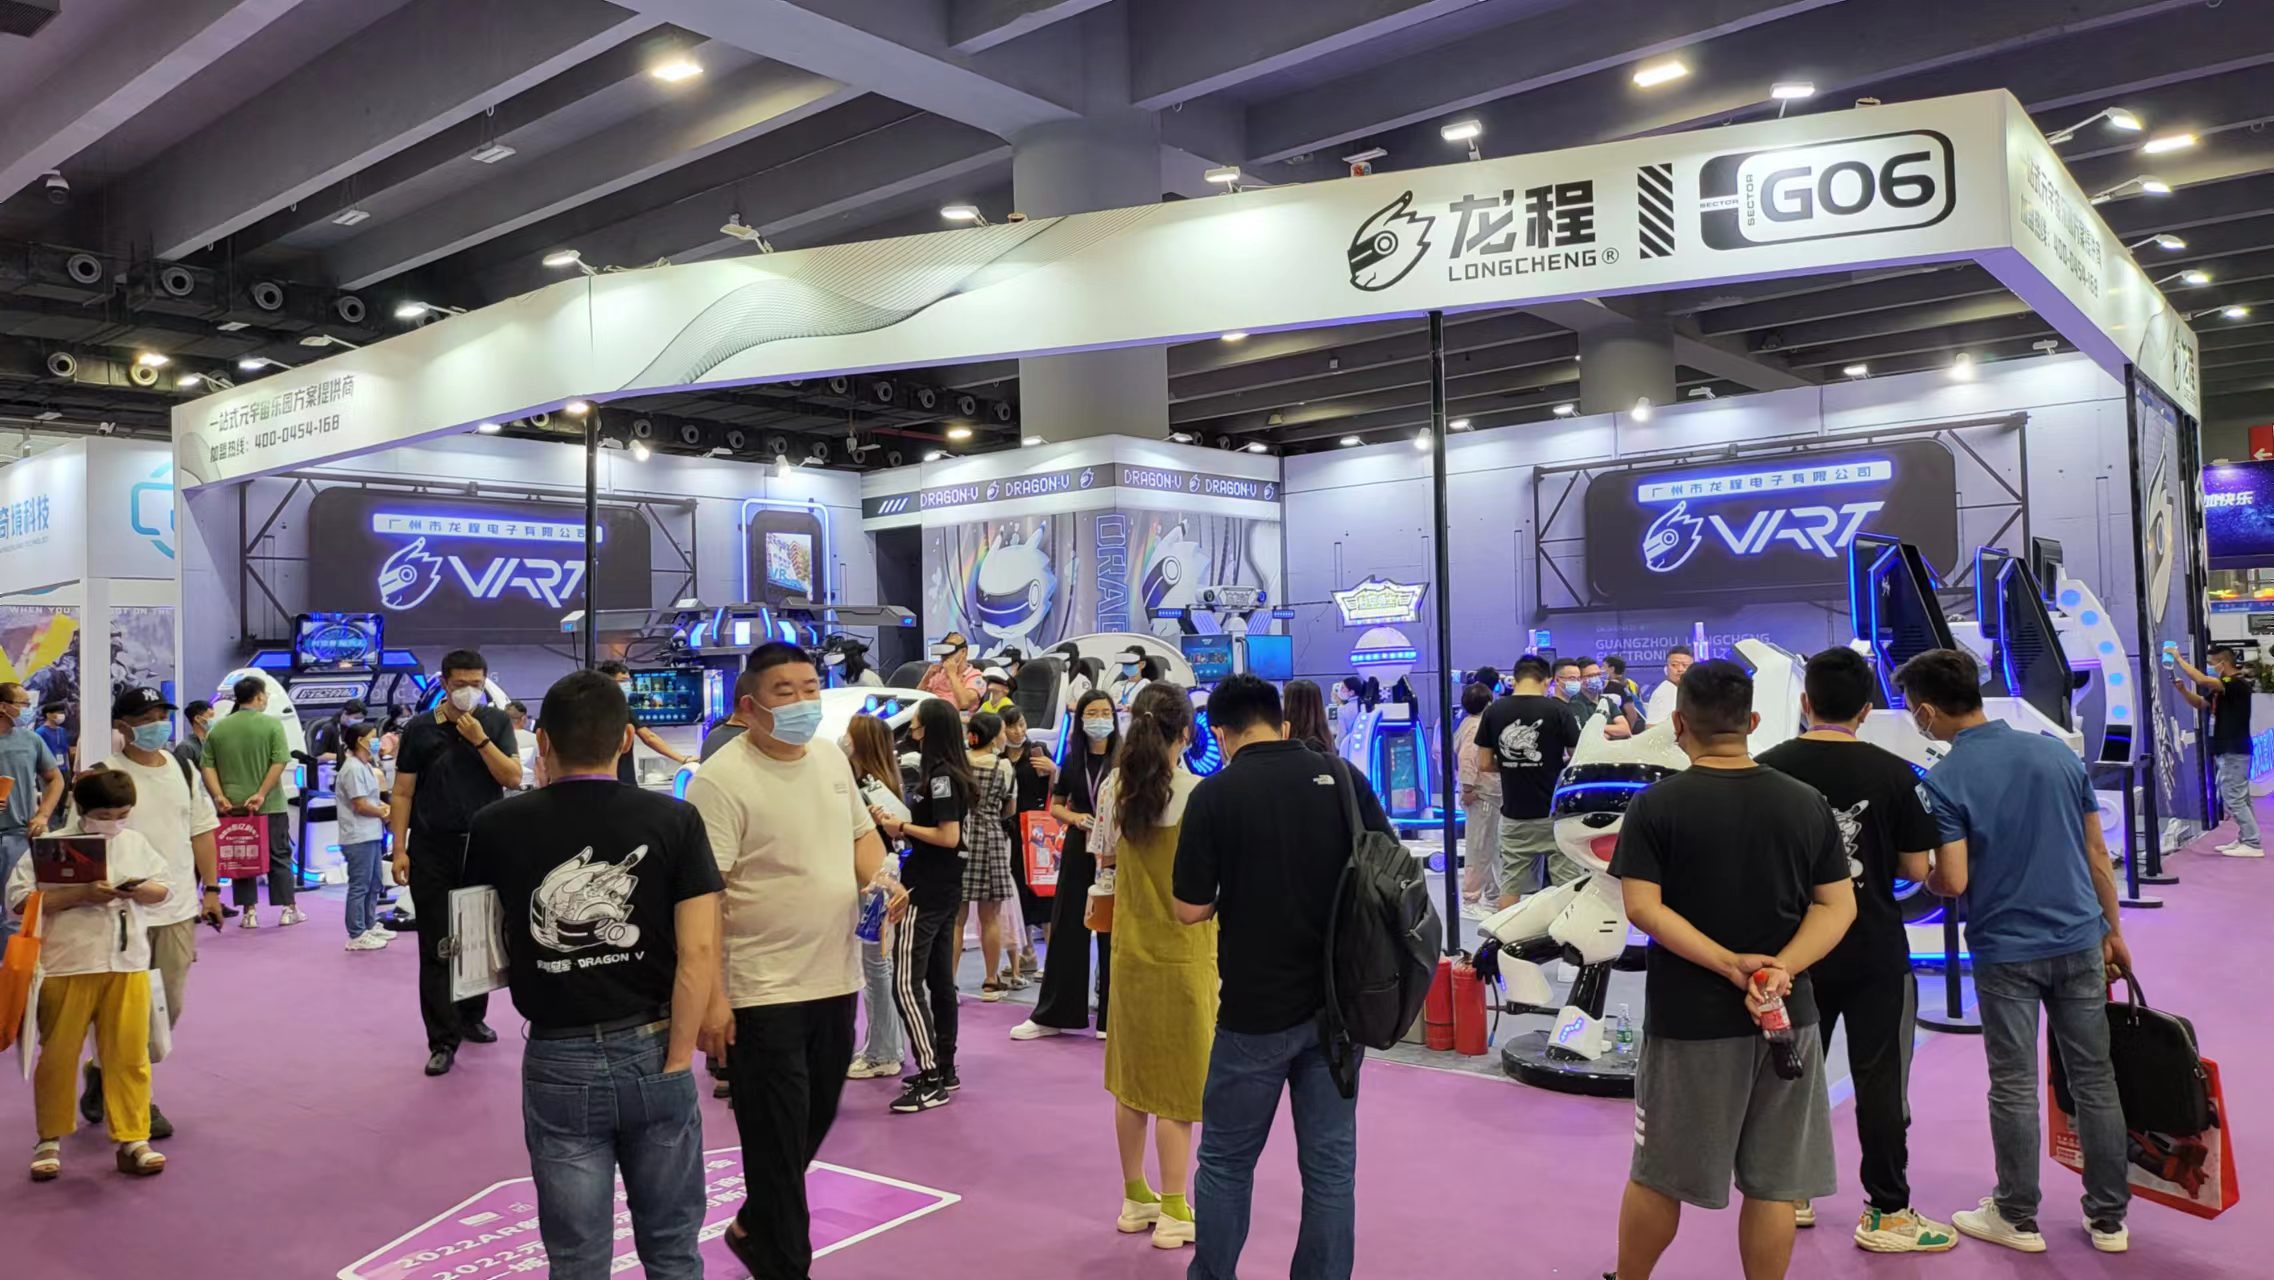 Vart VR |Talagang Sikat ang Guangzhou Metaverse Exhibition Booth G06